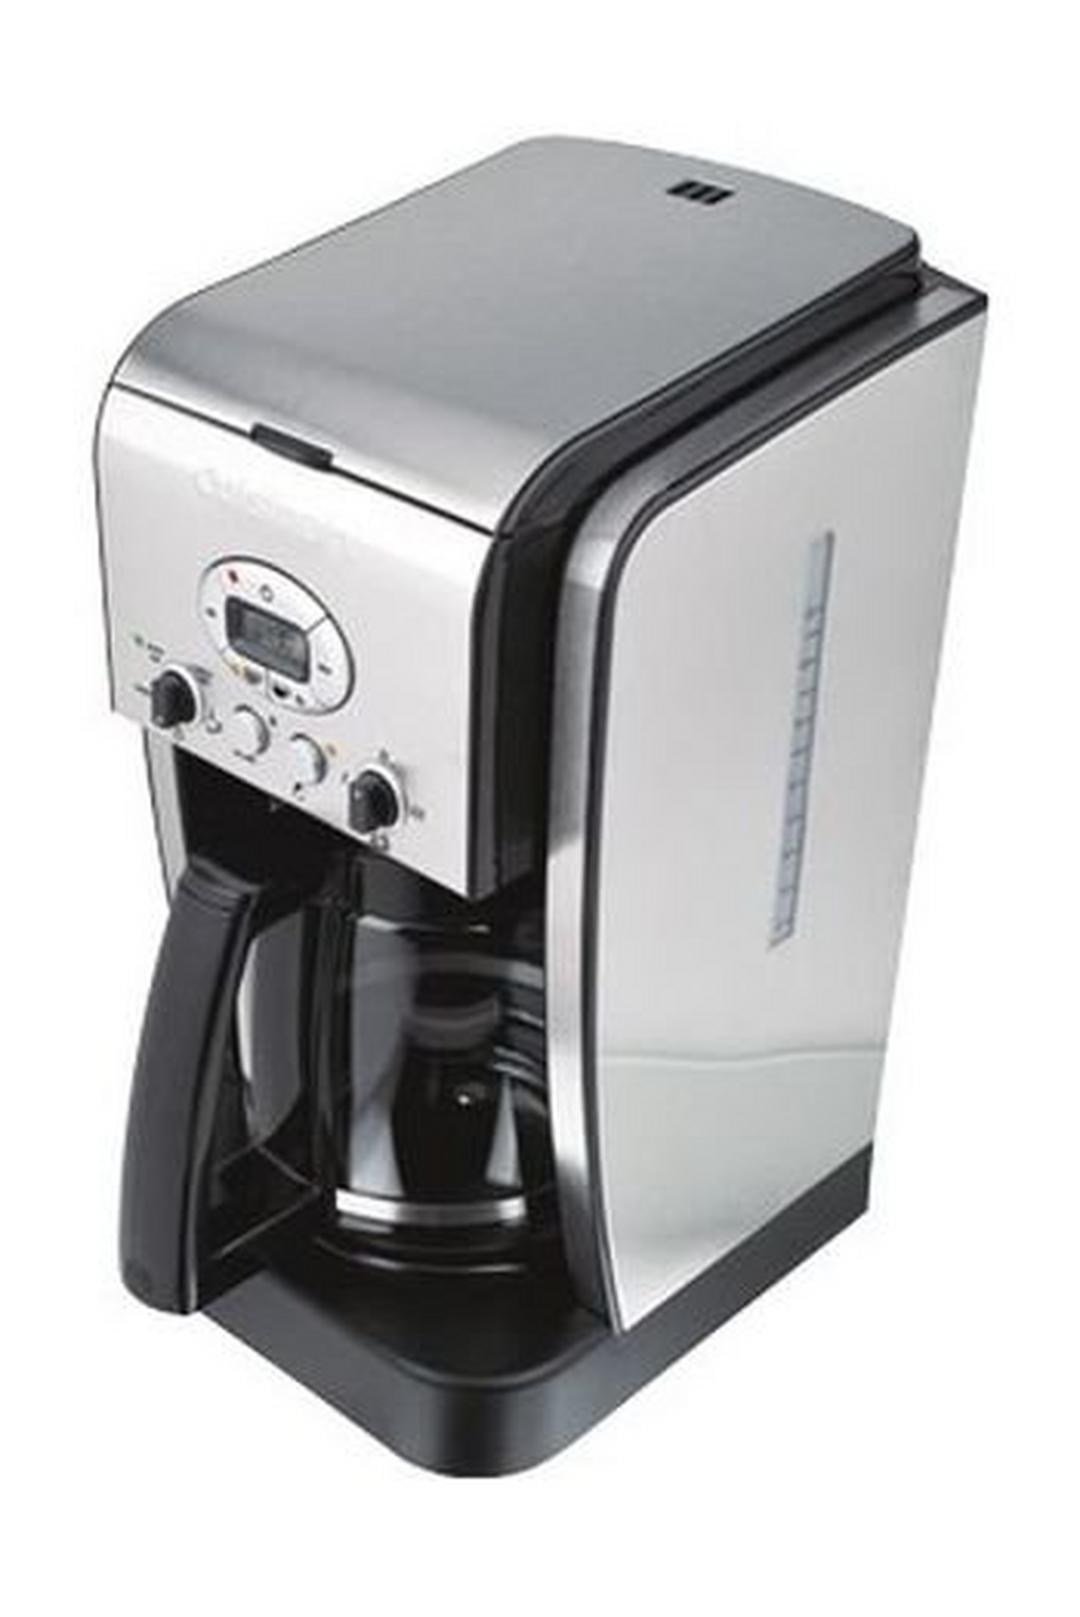 صانعة القهوة كويسينارت بقوة ١٠٠٠ واط وسعة ١,٨ لتر (DCC2650)